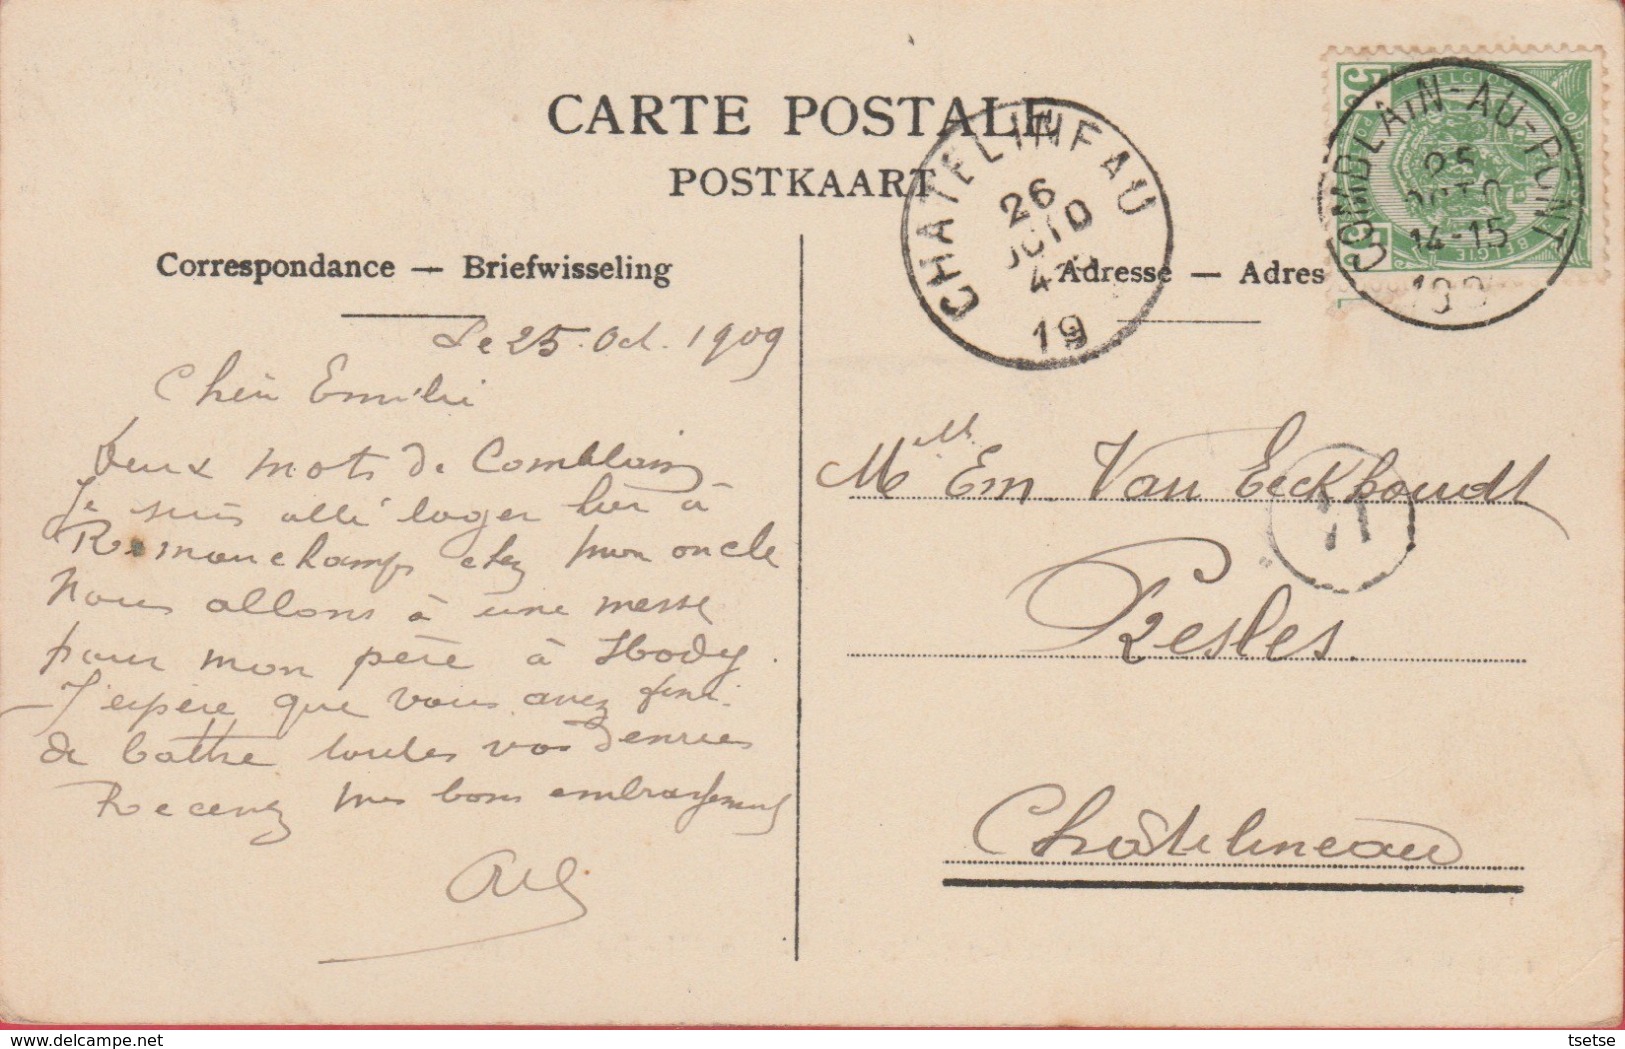 Comblain-au-Pont - La Vieille Eglise - 1909 ( Voir Verso ) - Comblain-au-Pont